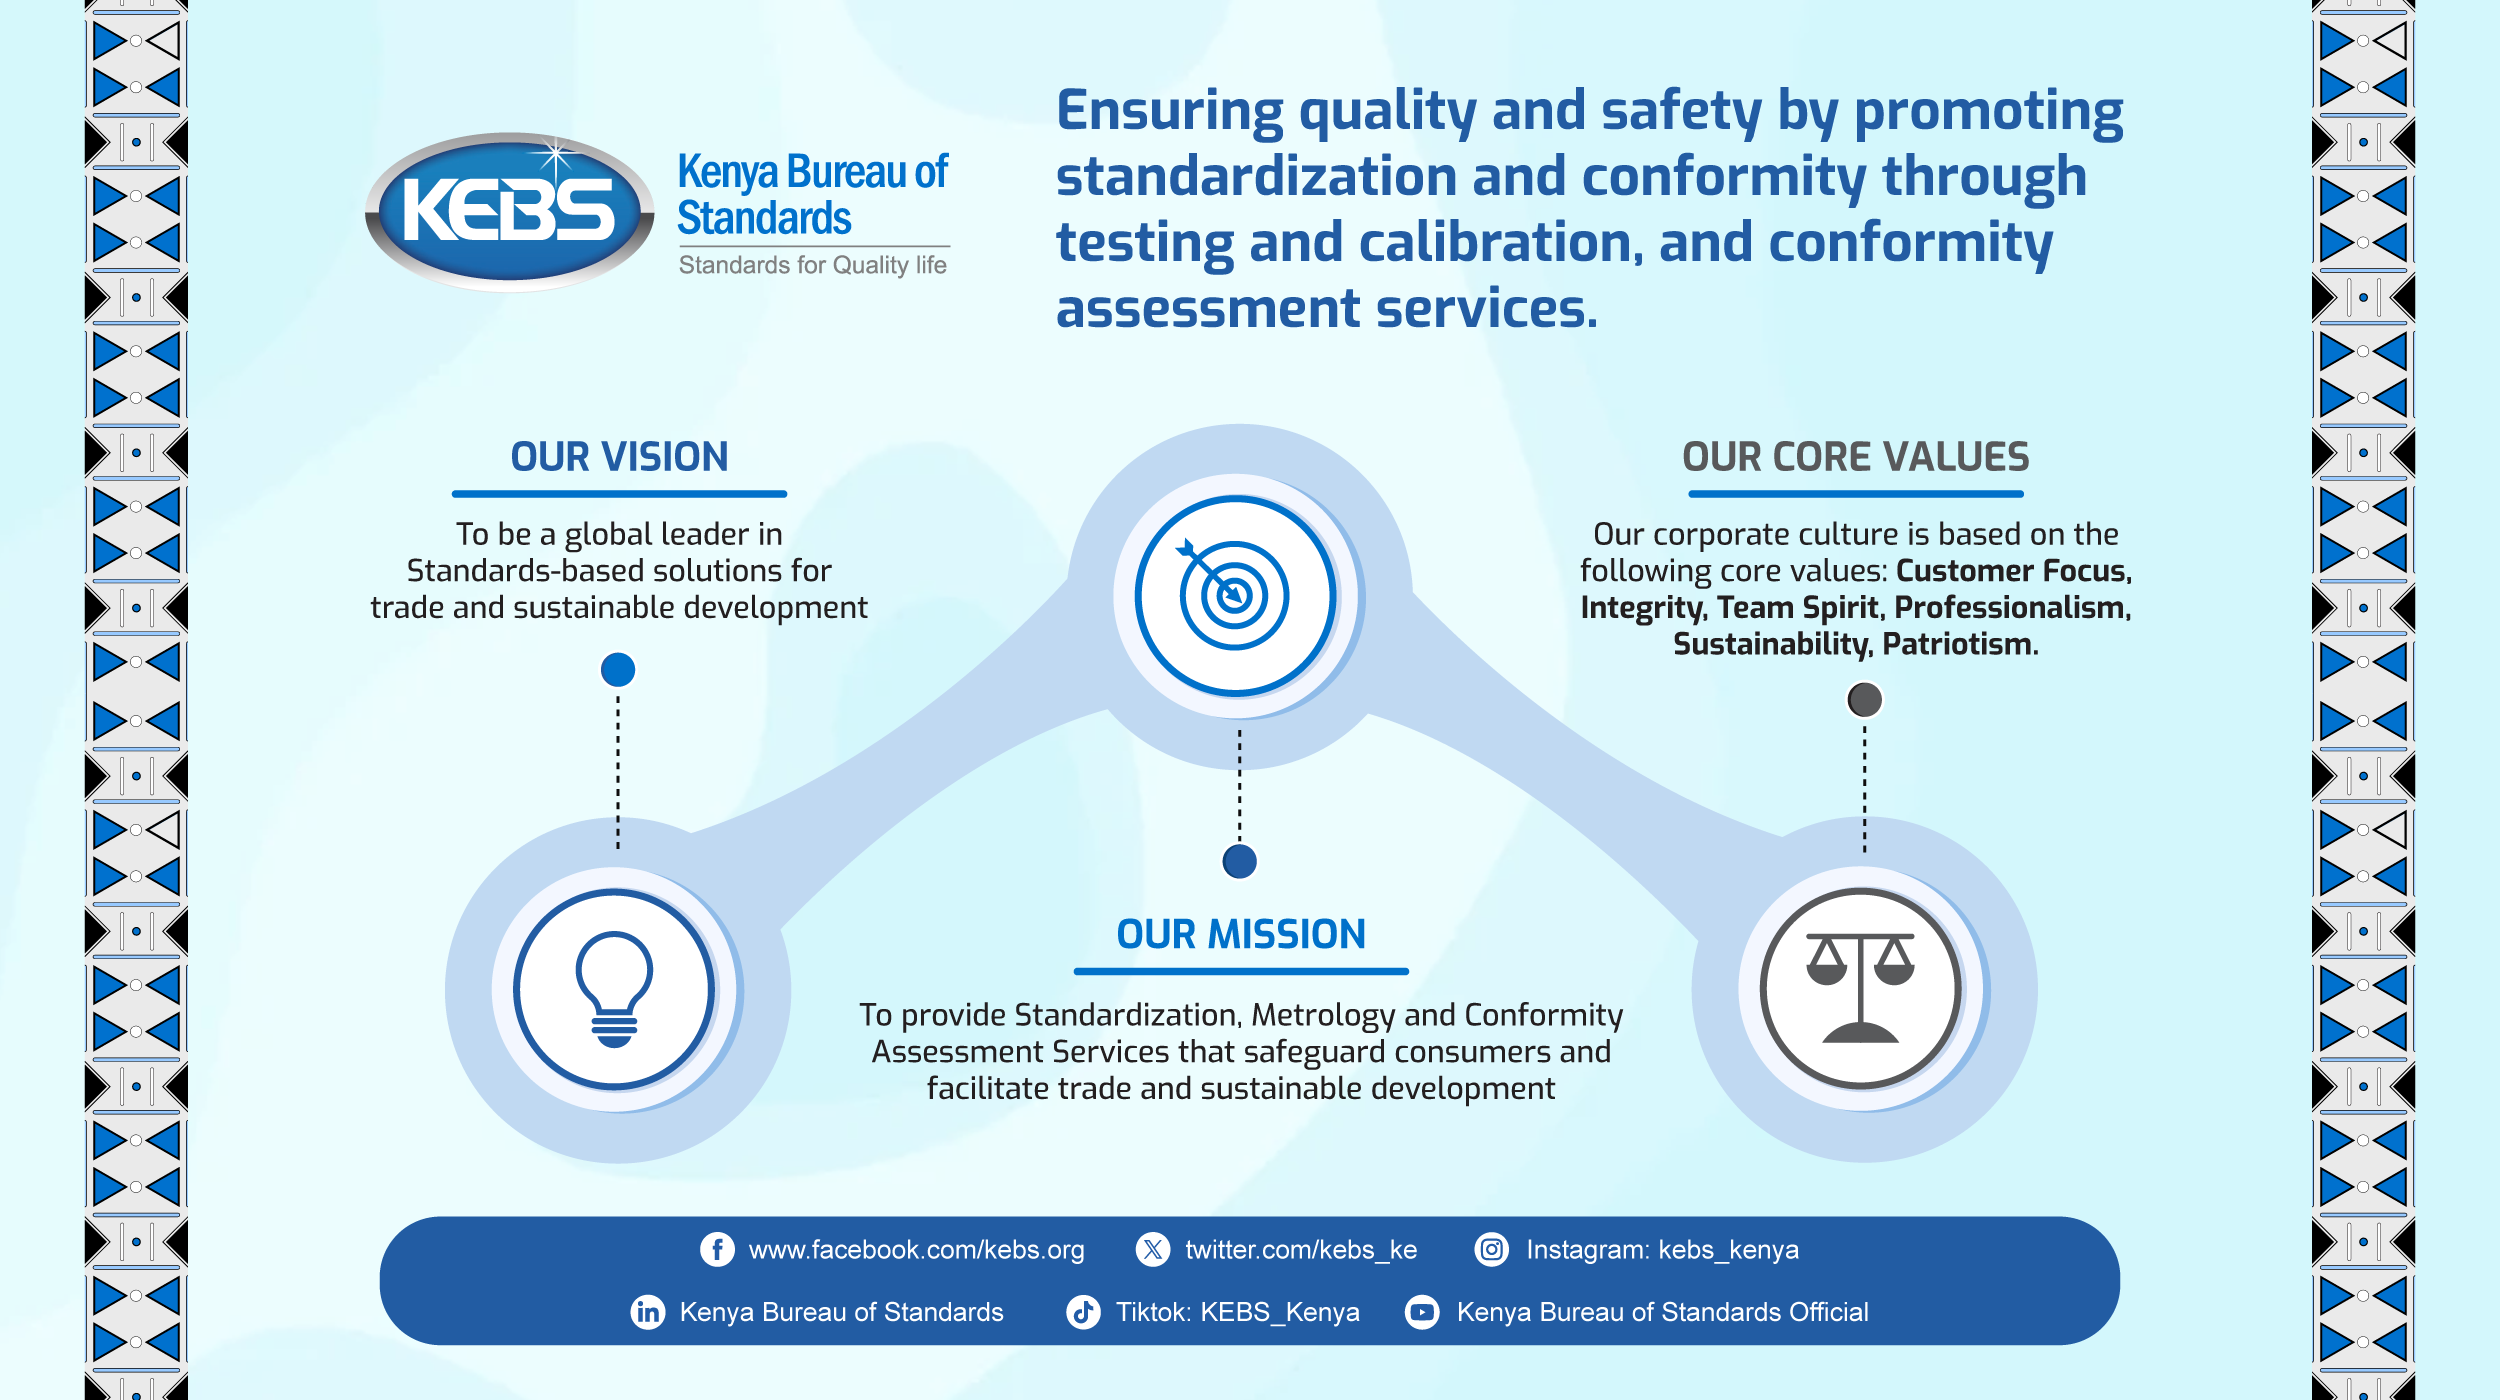 Kenya Bureau of Standards – Standards for Quality Life